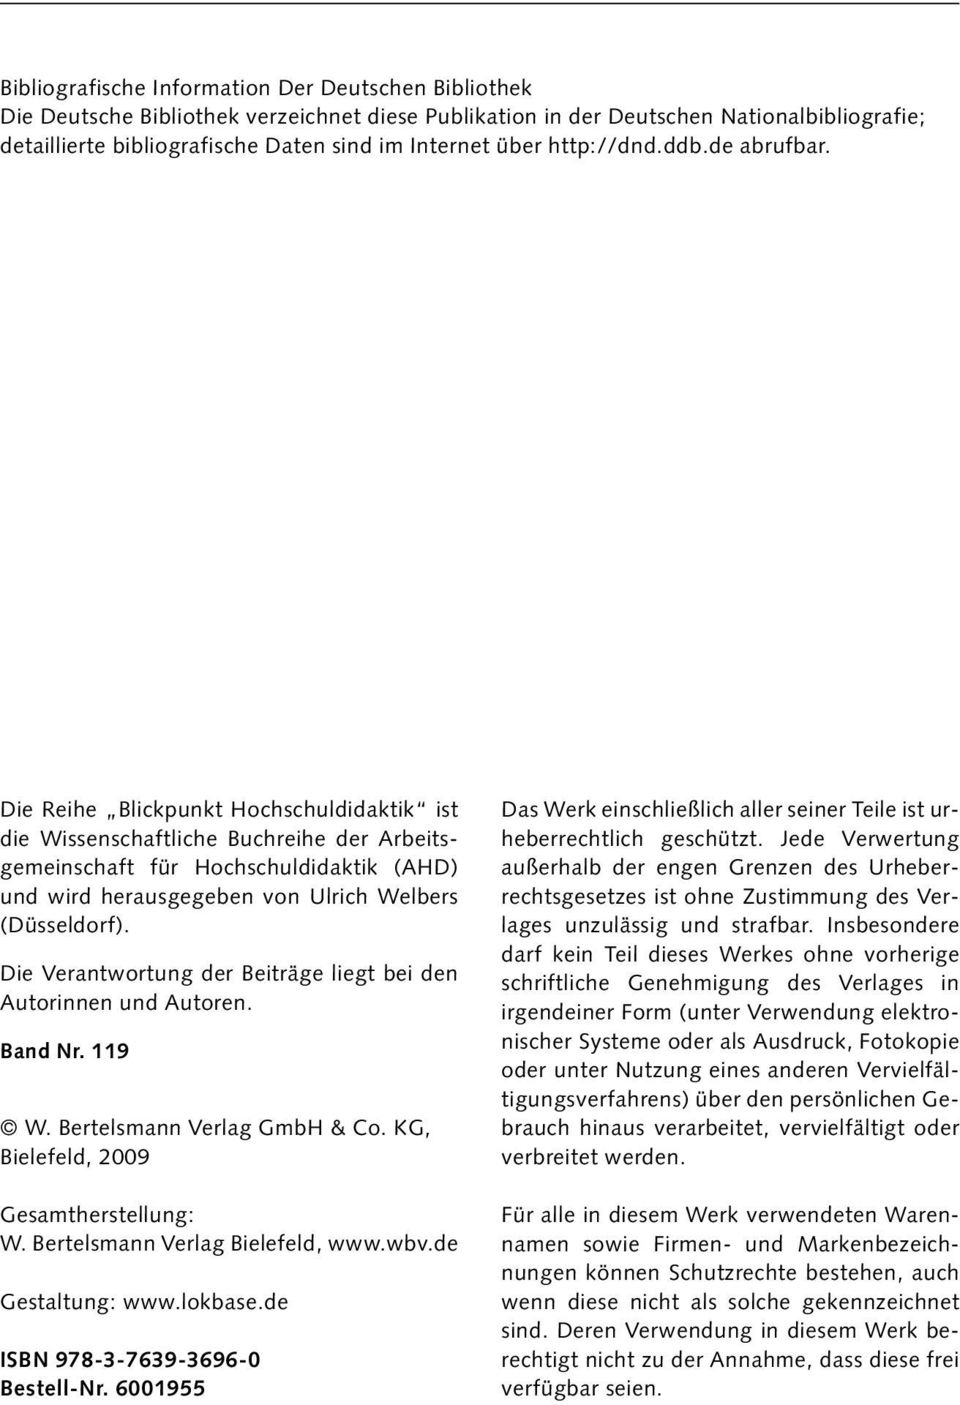 Die Reihe Blickpunkt Hochschuldidaktik ist die Wissenschaftliche Buchreihe der Arbeitsgemeinschaft für Hochschuldidaktik (AHD) und wird herausgegeben von Ulrich Welbers (Düsseldorf).